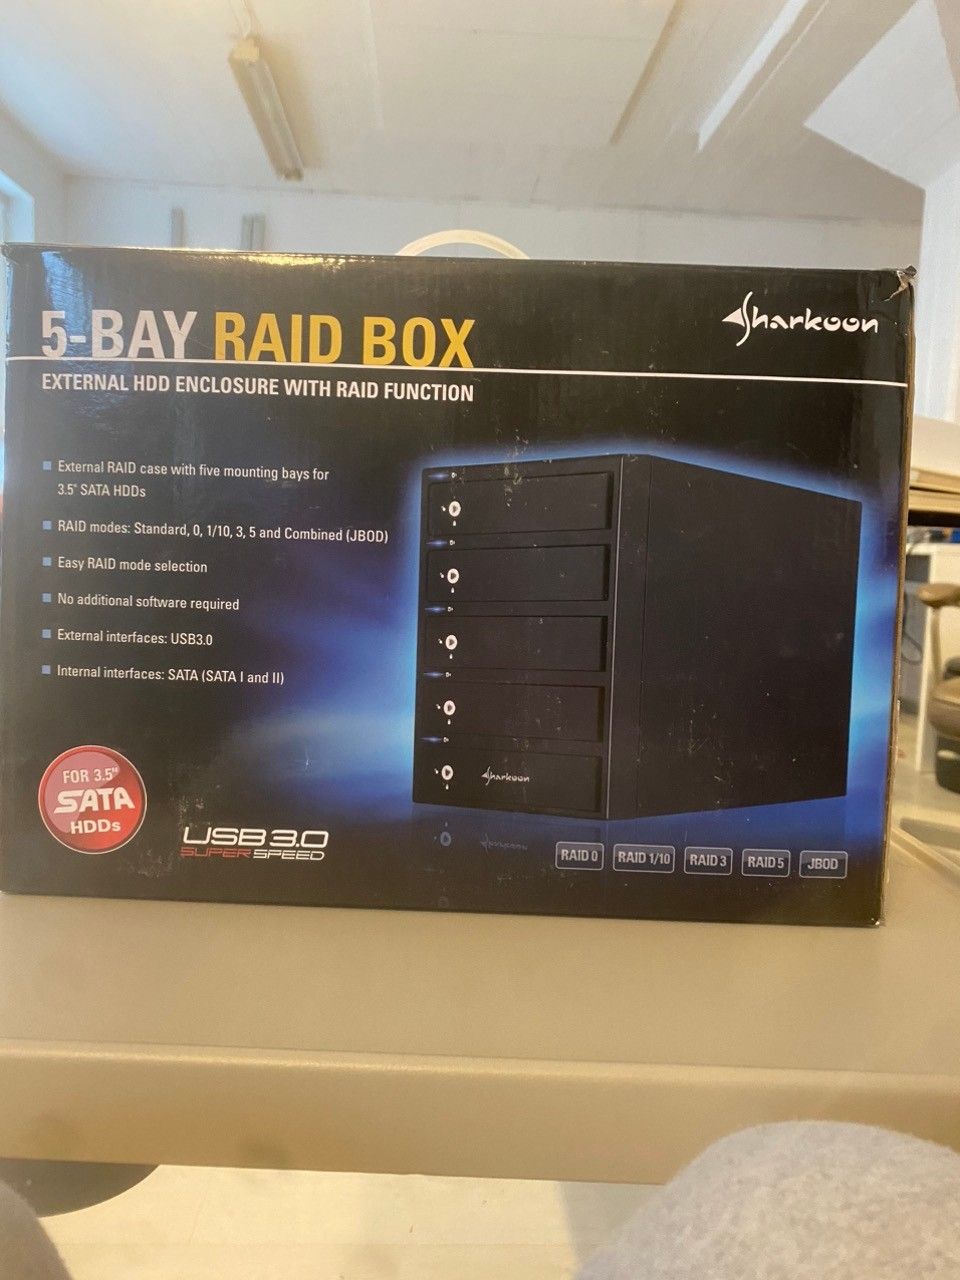 Sharkoon 5-bay raid box